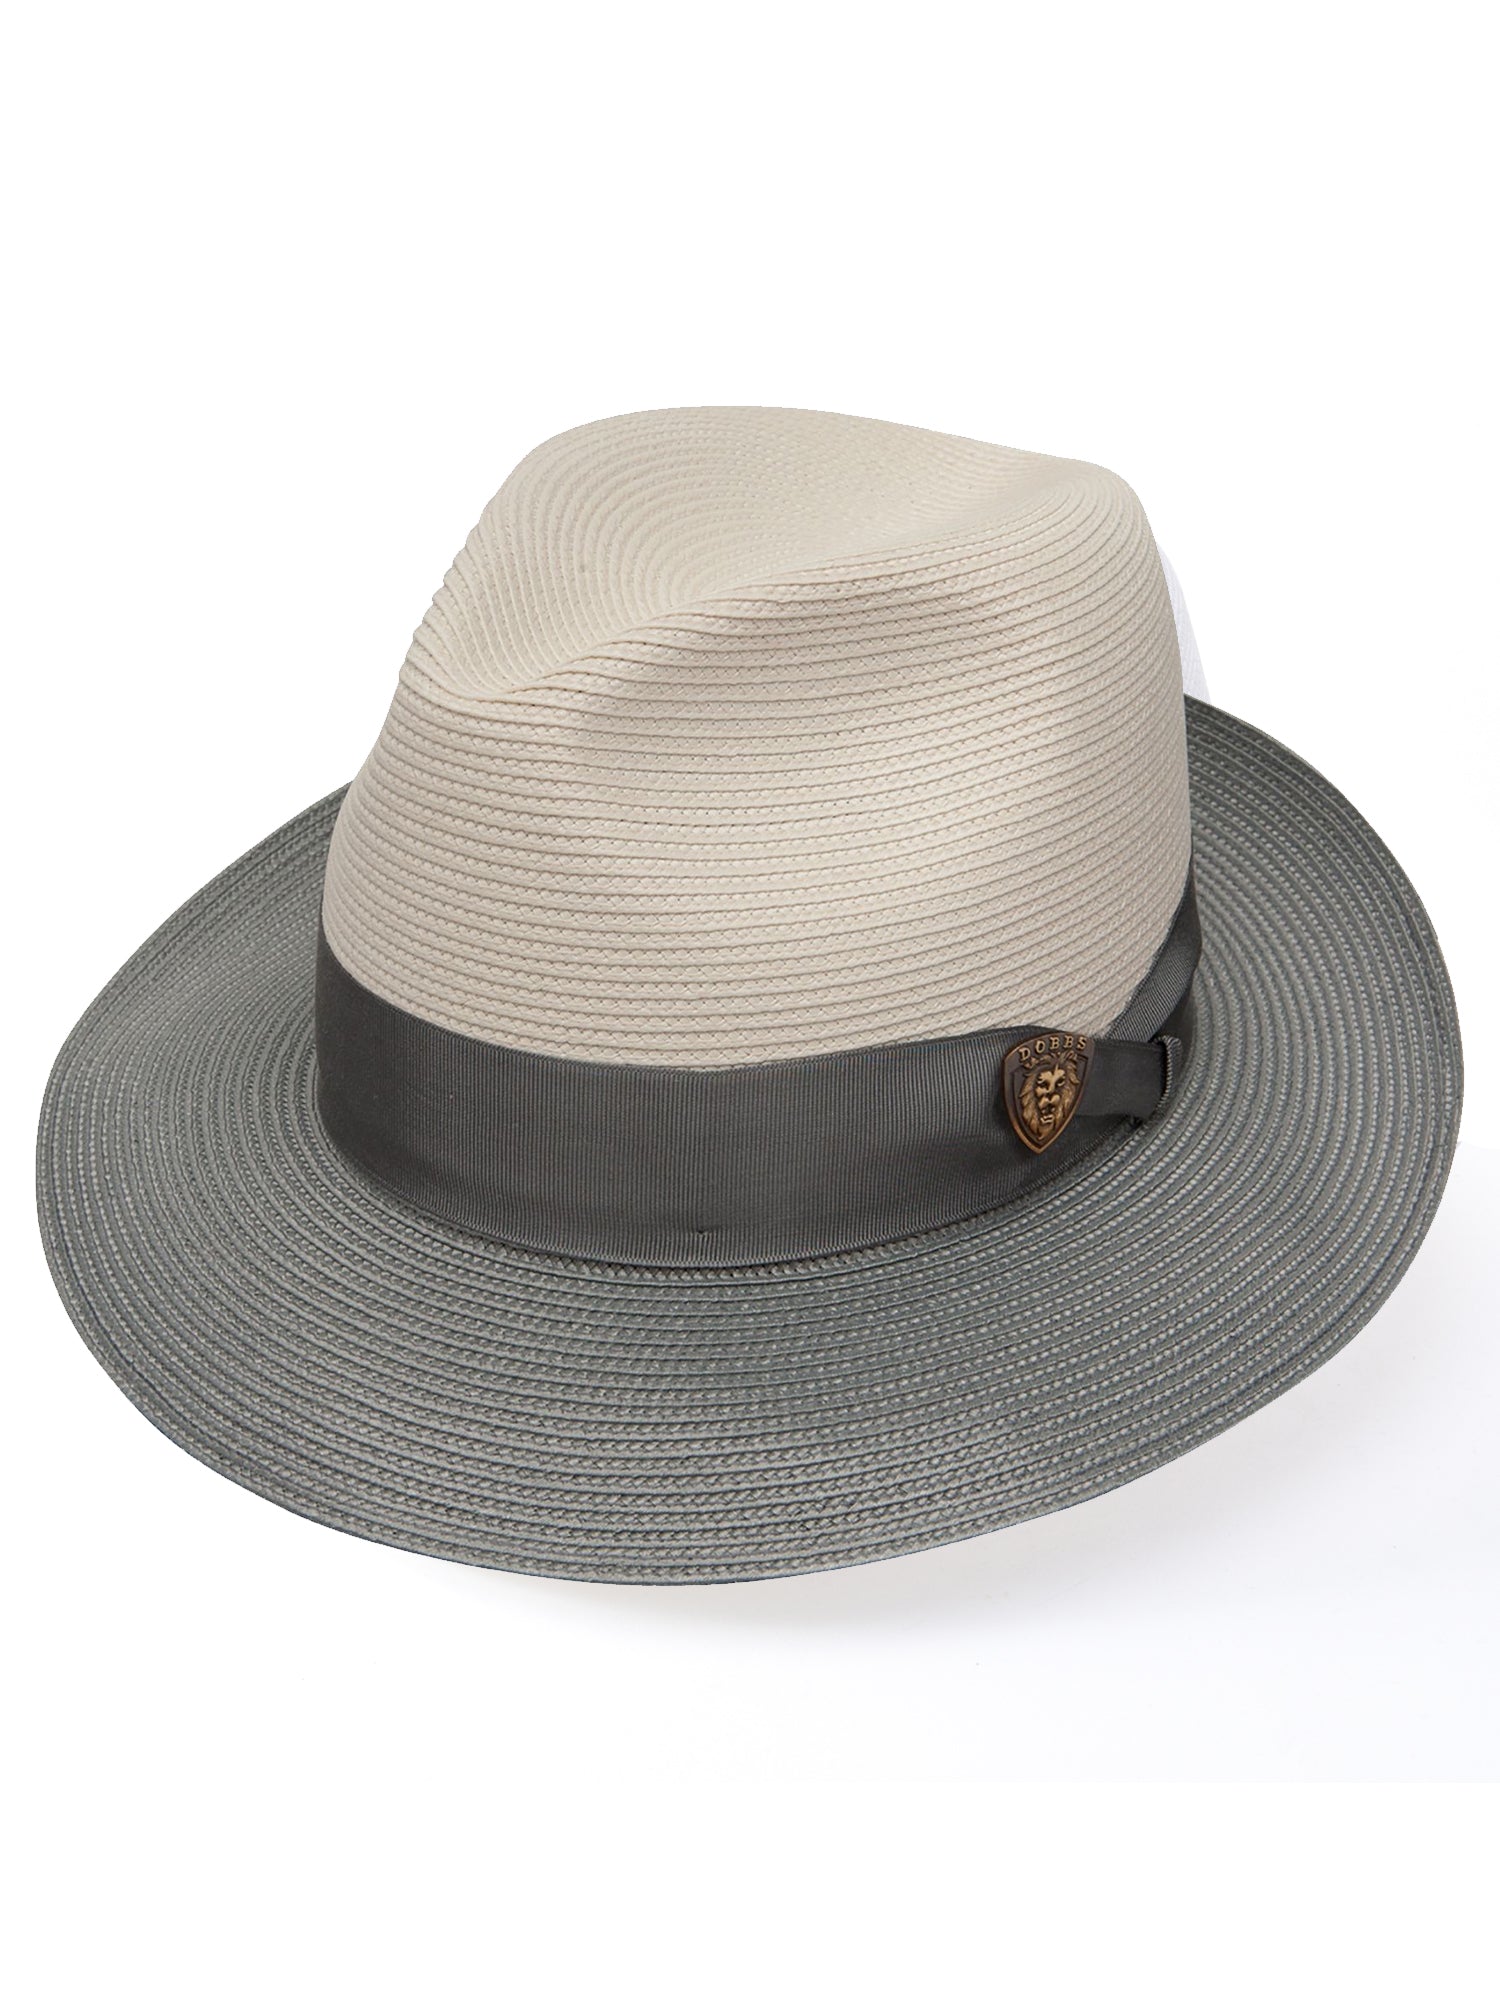 Dobbs Florentine Milan Toledo Straw Hat in Beige/Grey